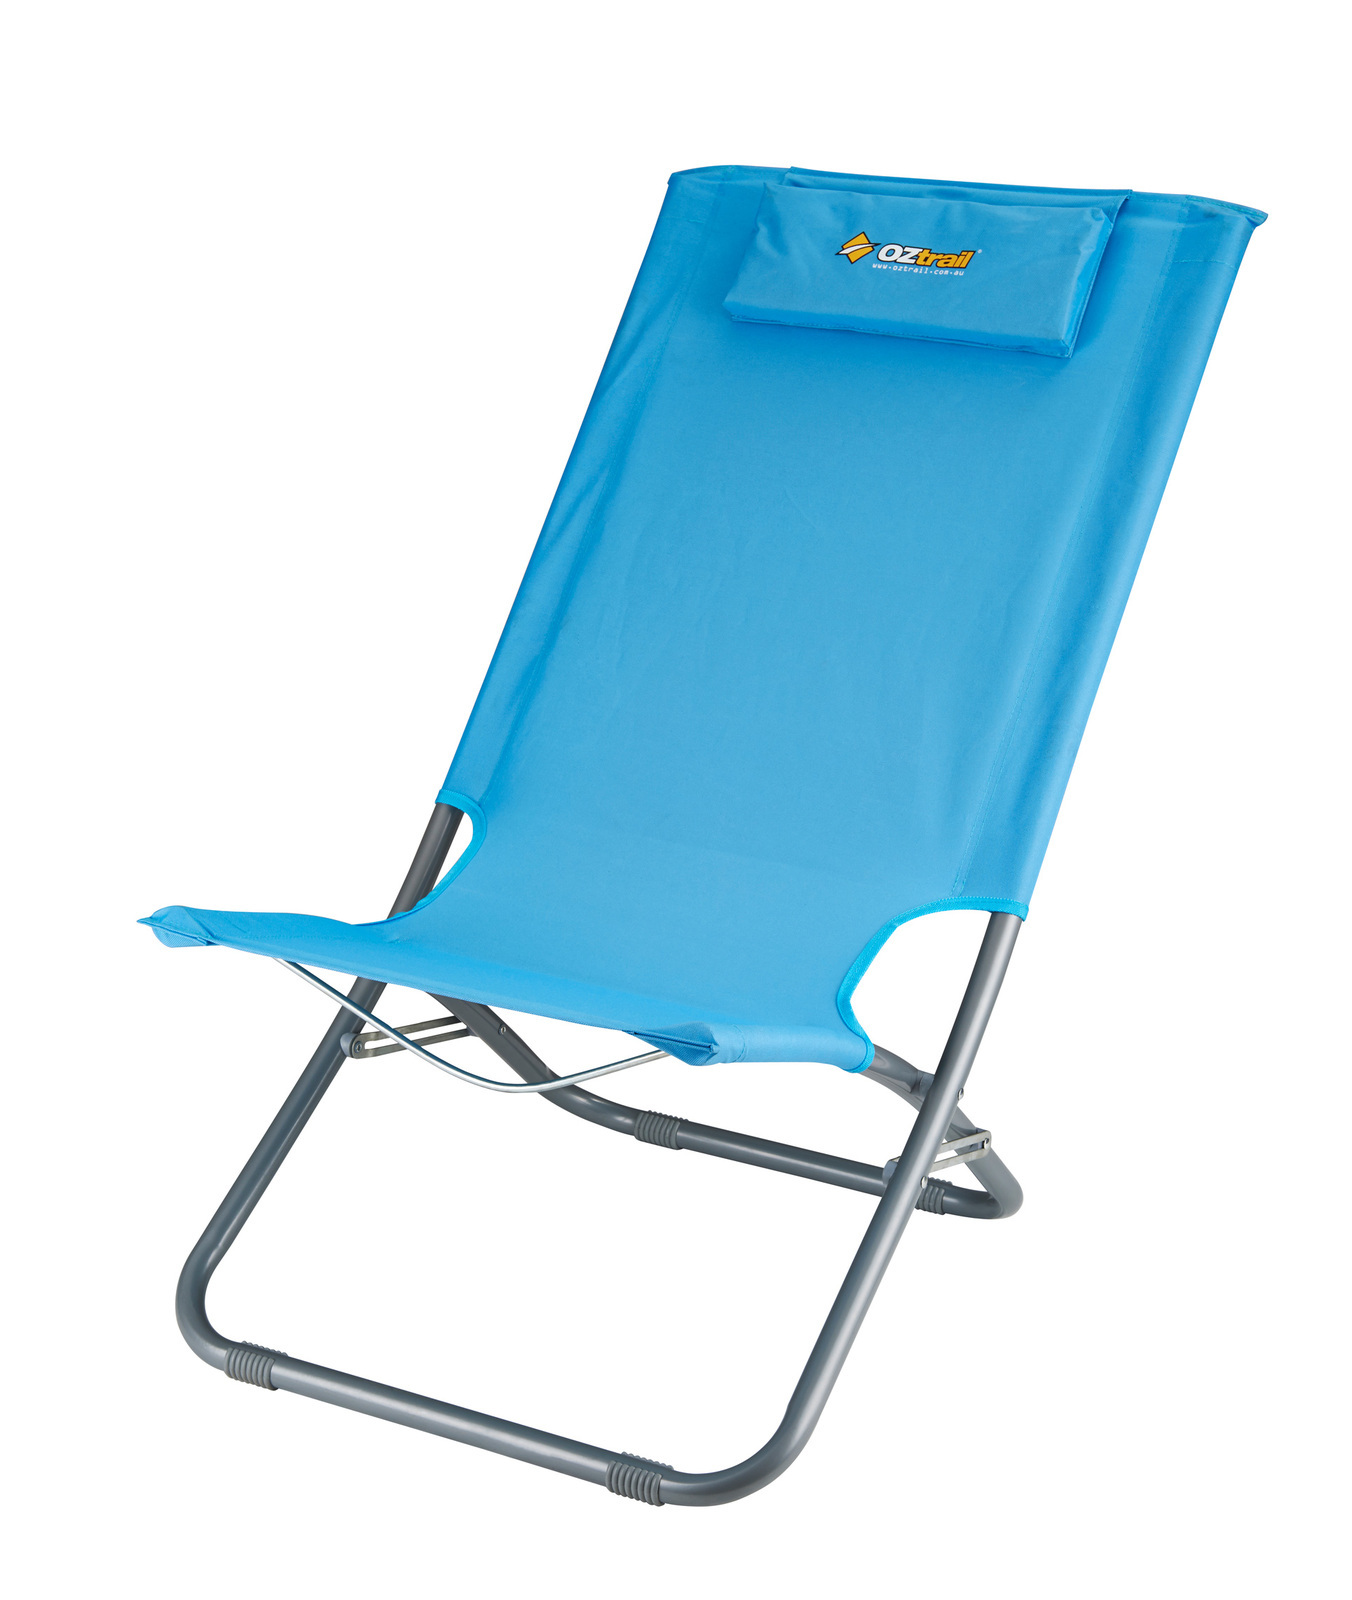 oztrail newport beach chair